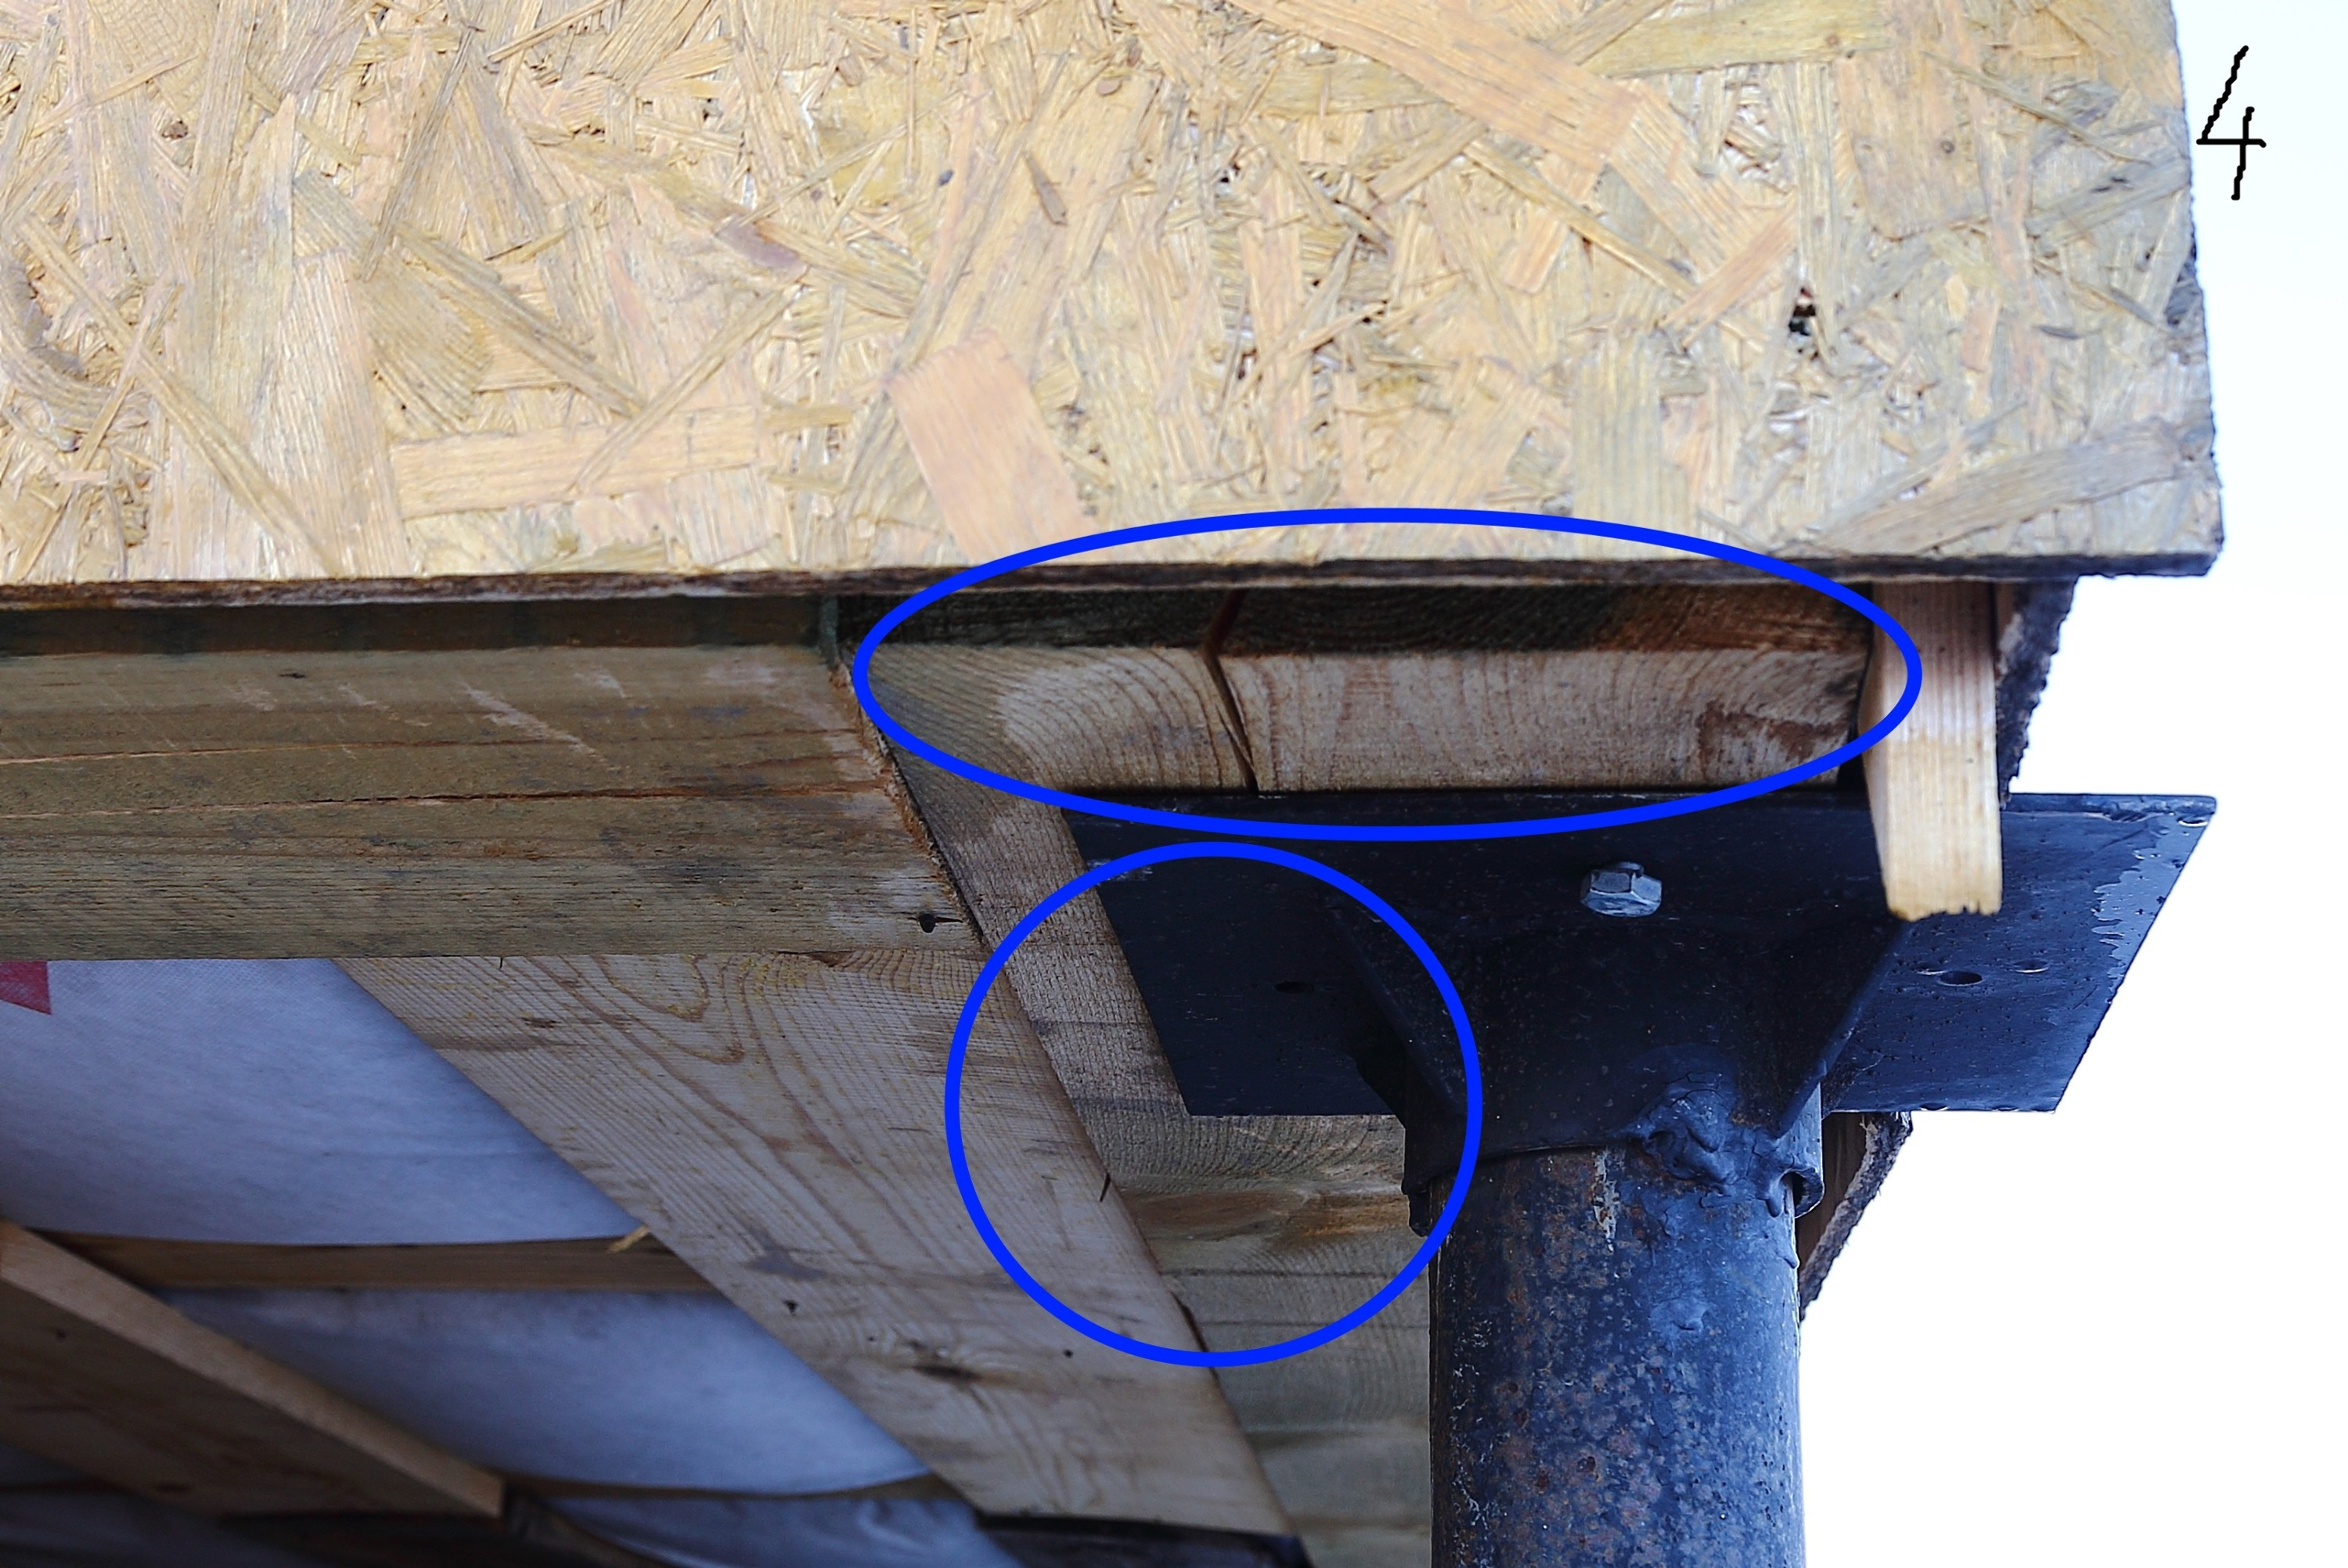 Один из немногих недостатков, которые застройщик признал, — отсутствие изоляции между деревянным фундаментом и металлической сваей